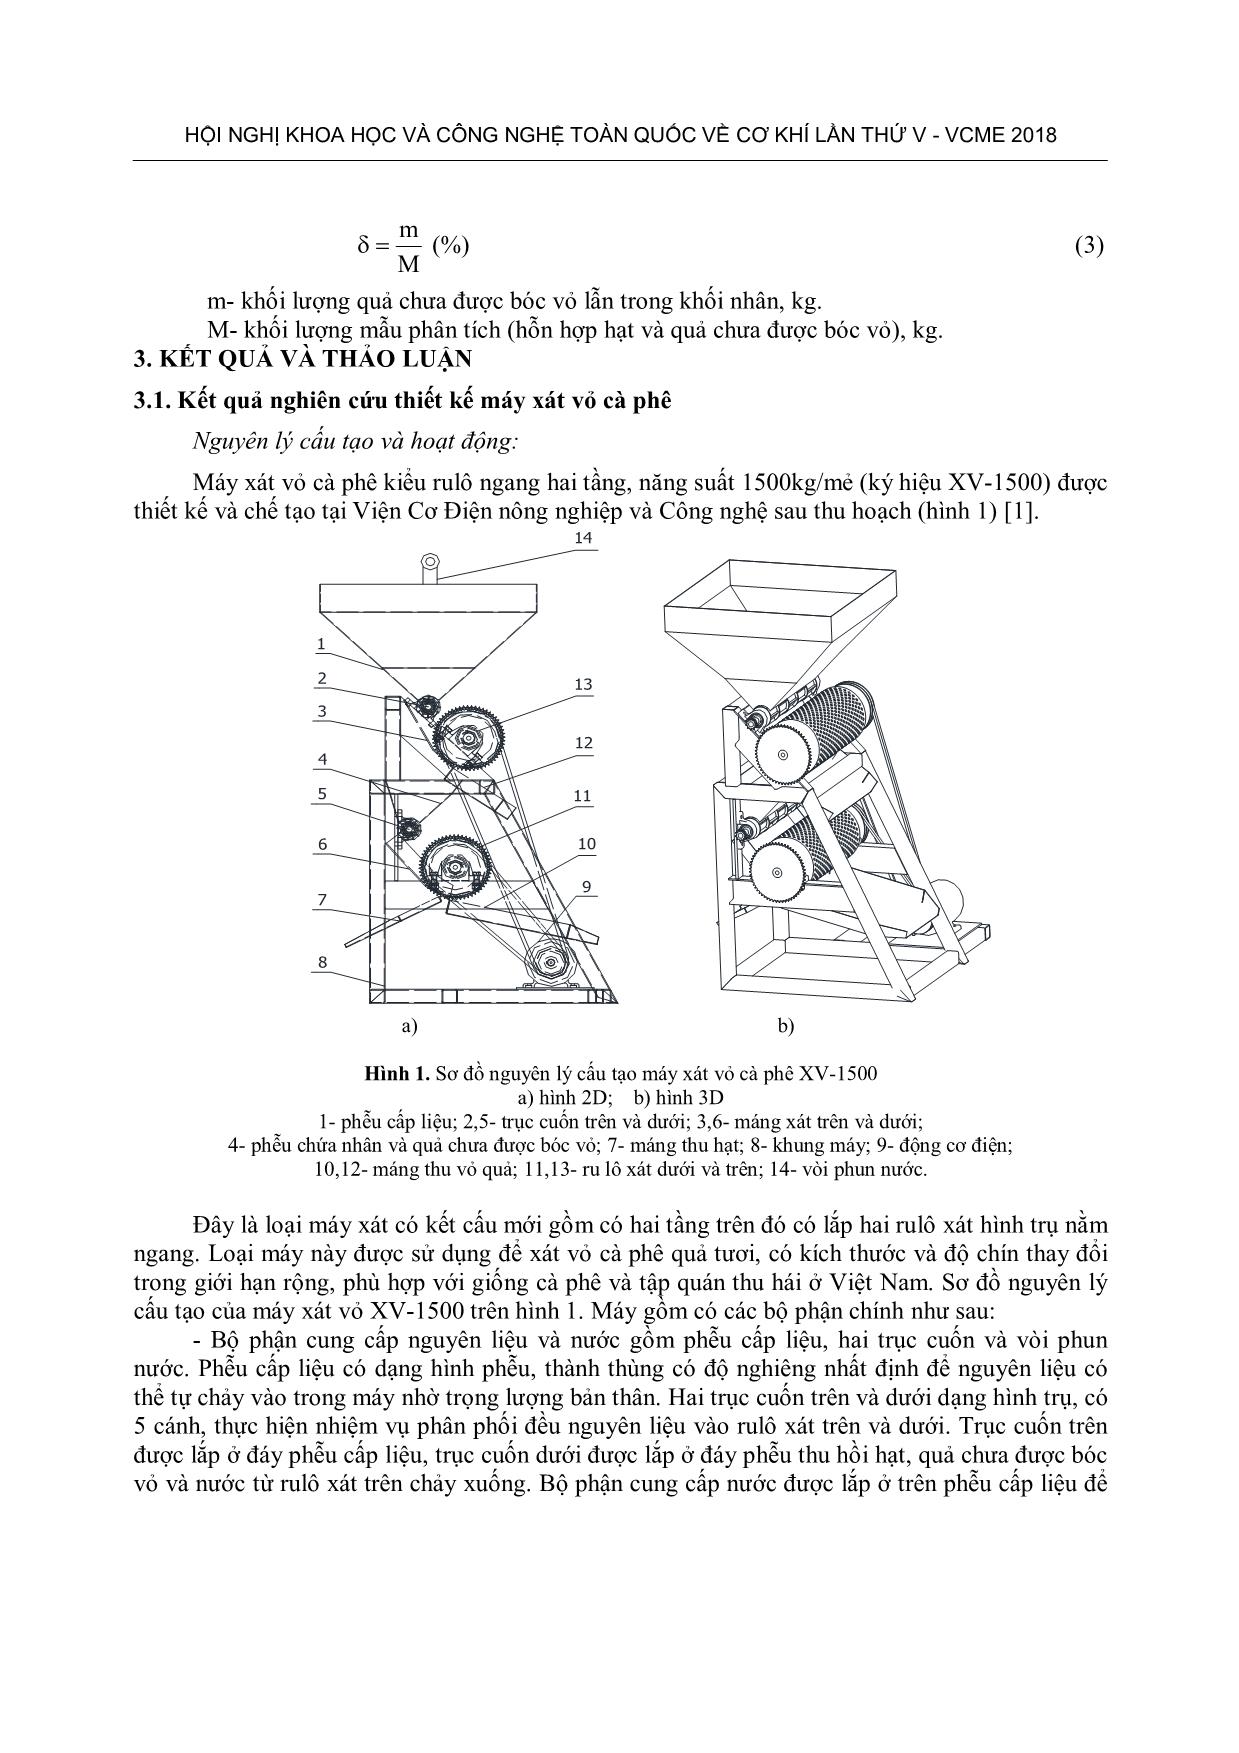 Nghiên cứu thiết kế máy xát vỏ cà phê kiểu rulô ngang hai tầng XV-1500 trang 4